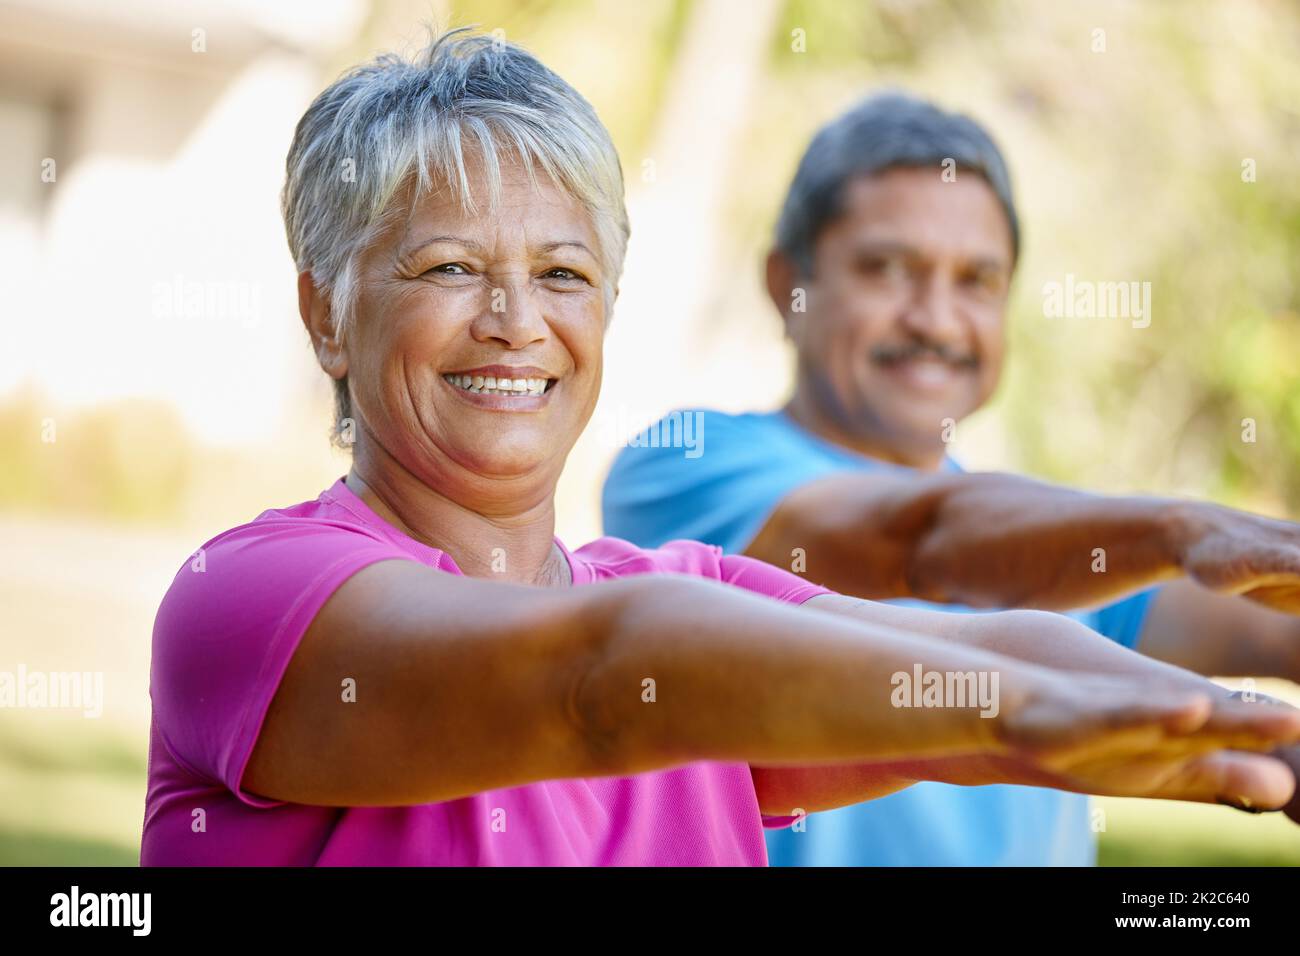 Vivre la vie avec vitalité. Portrait d'un couple mature s'exerçant ensemble dans leur arrière-cour. Banque D'Images